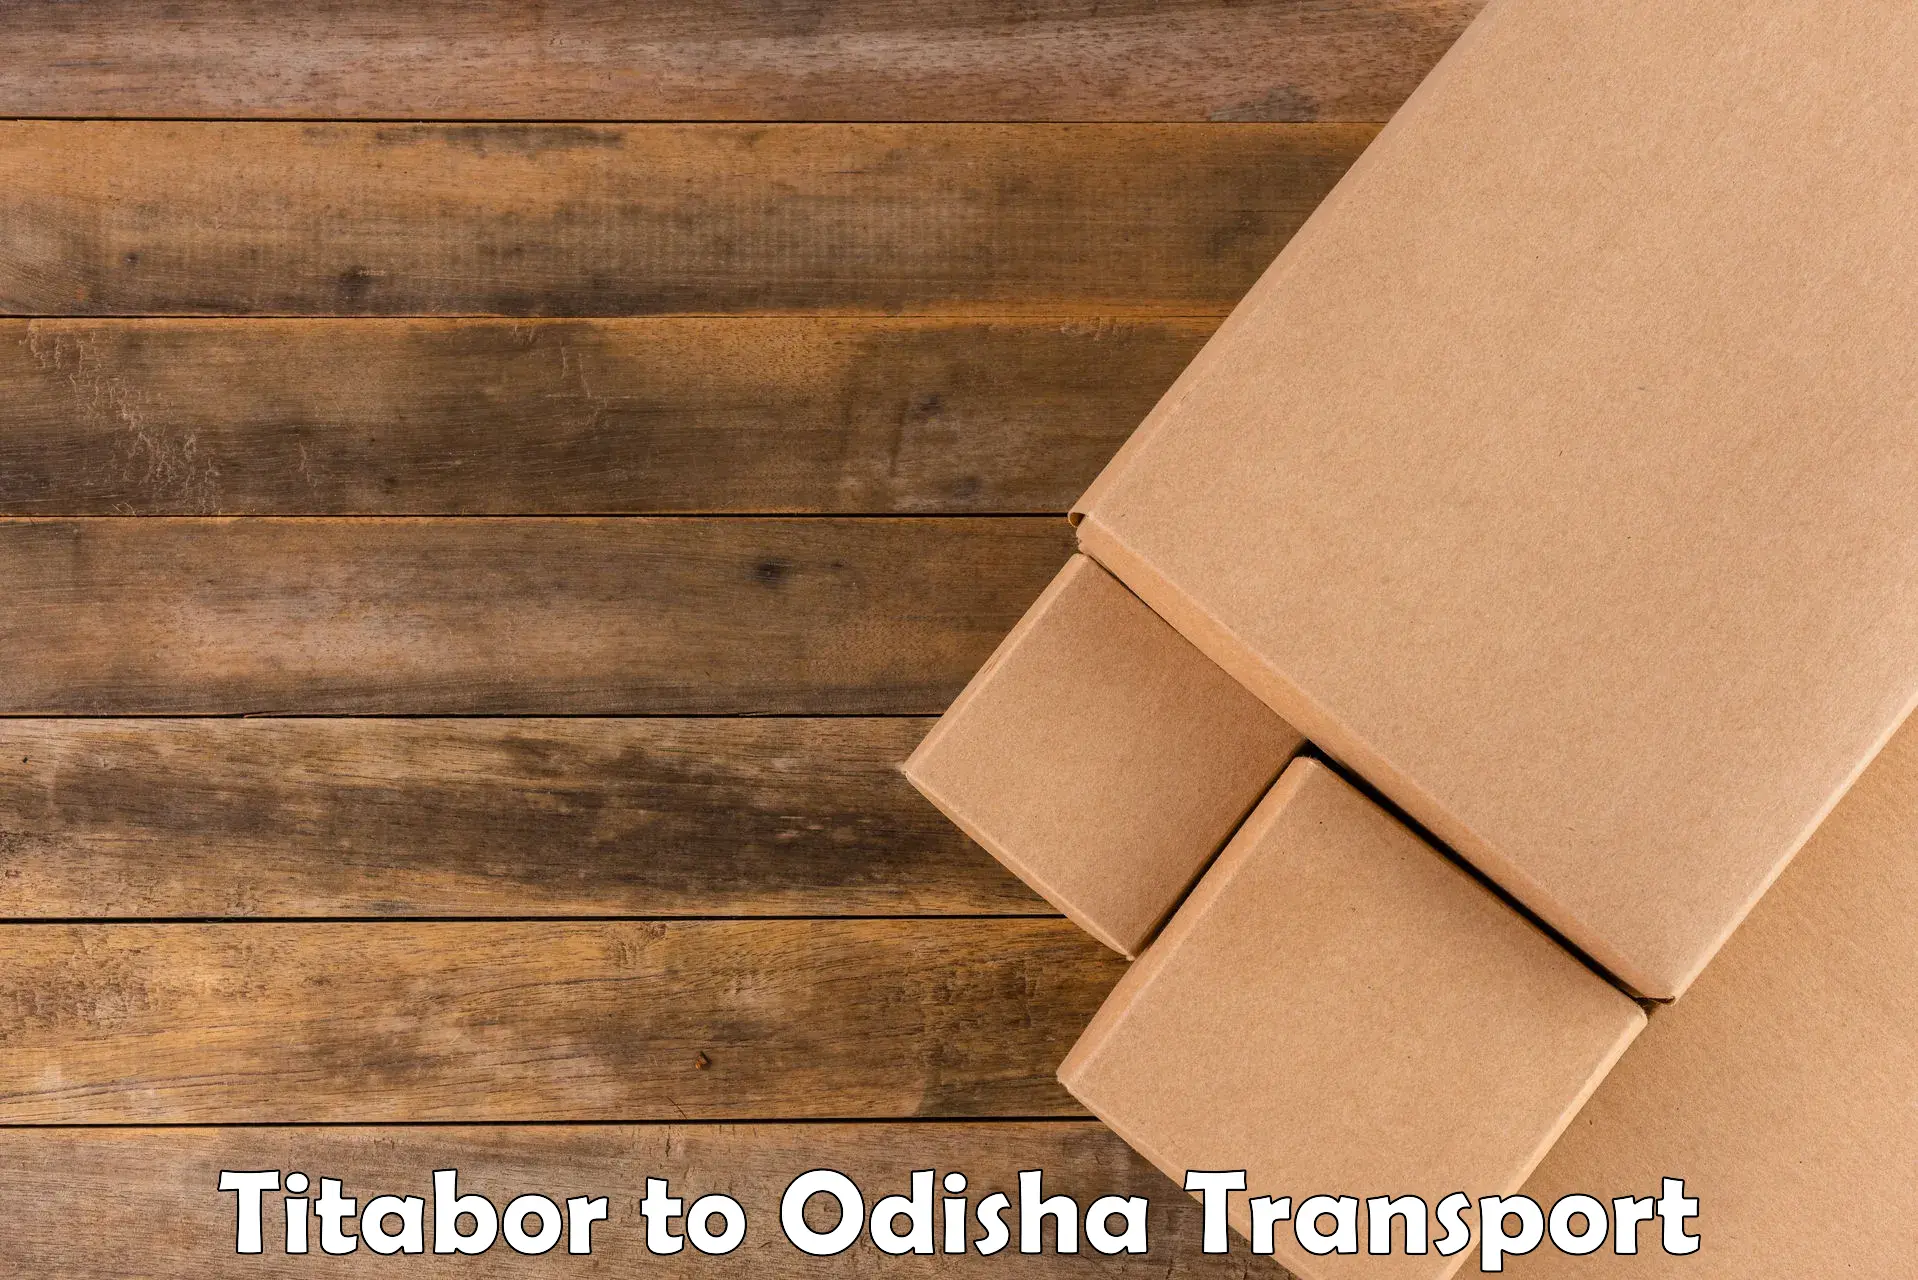 Daily transport service Titabor to Kesinga